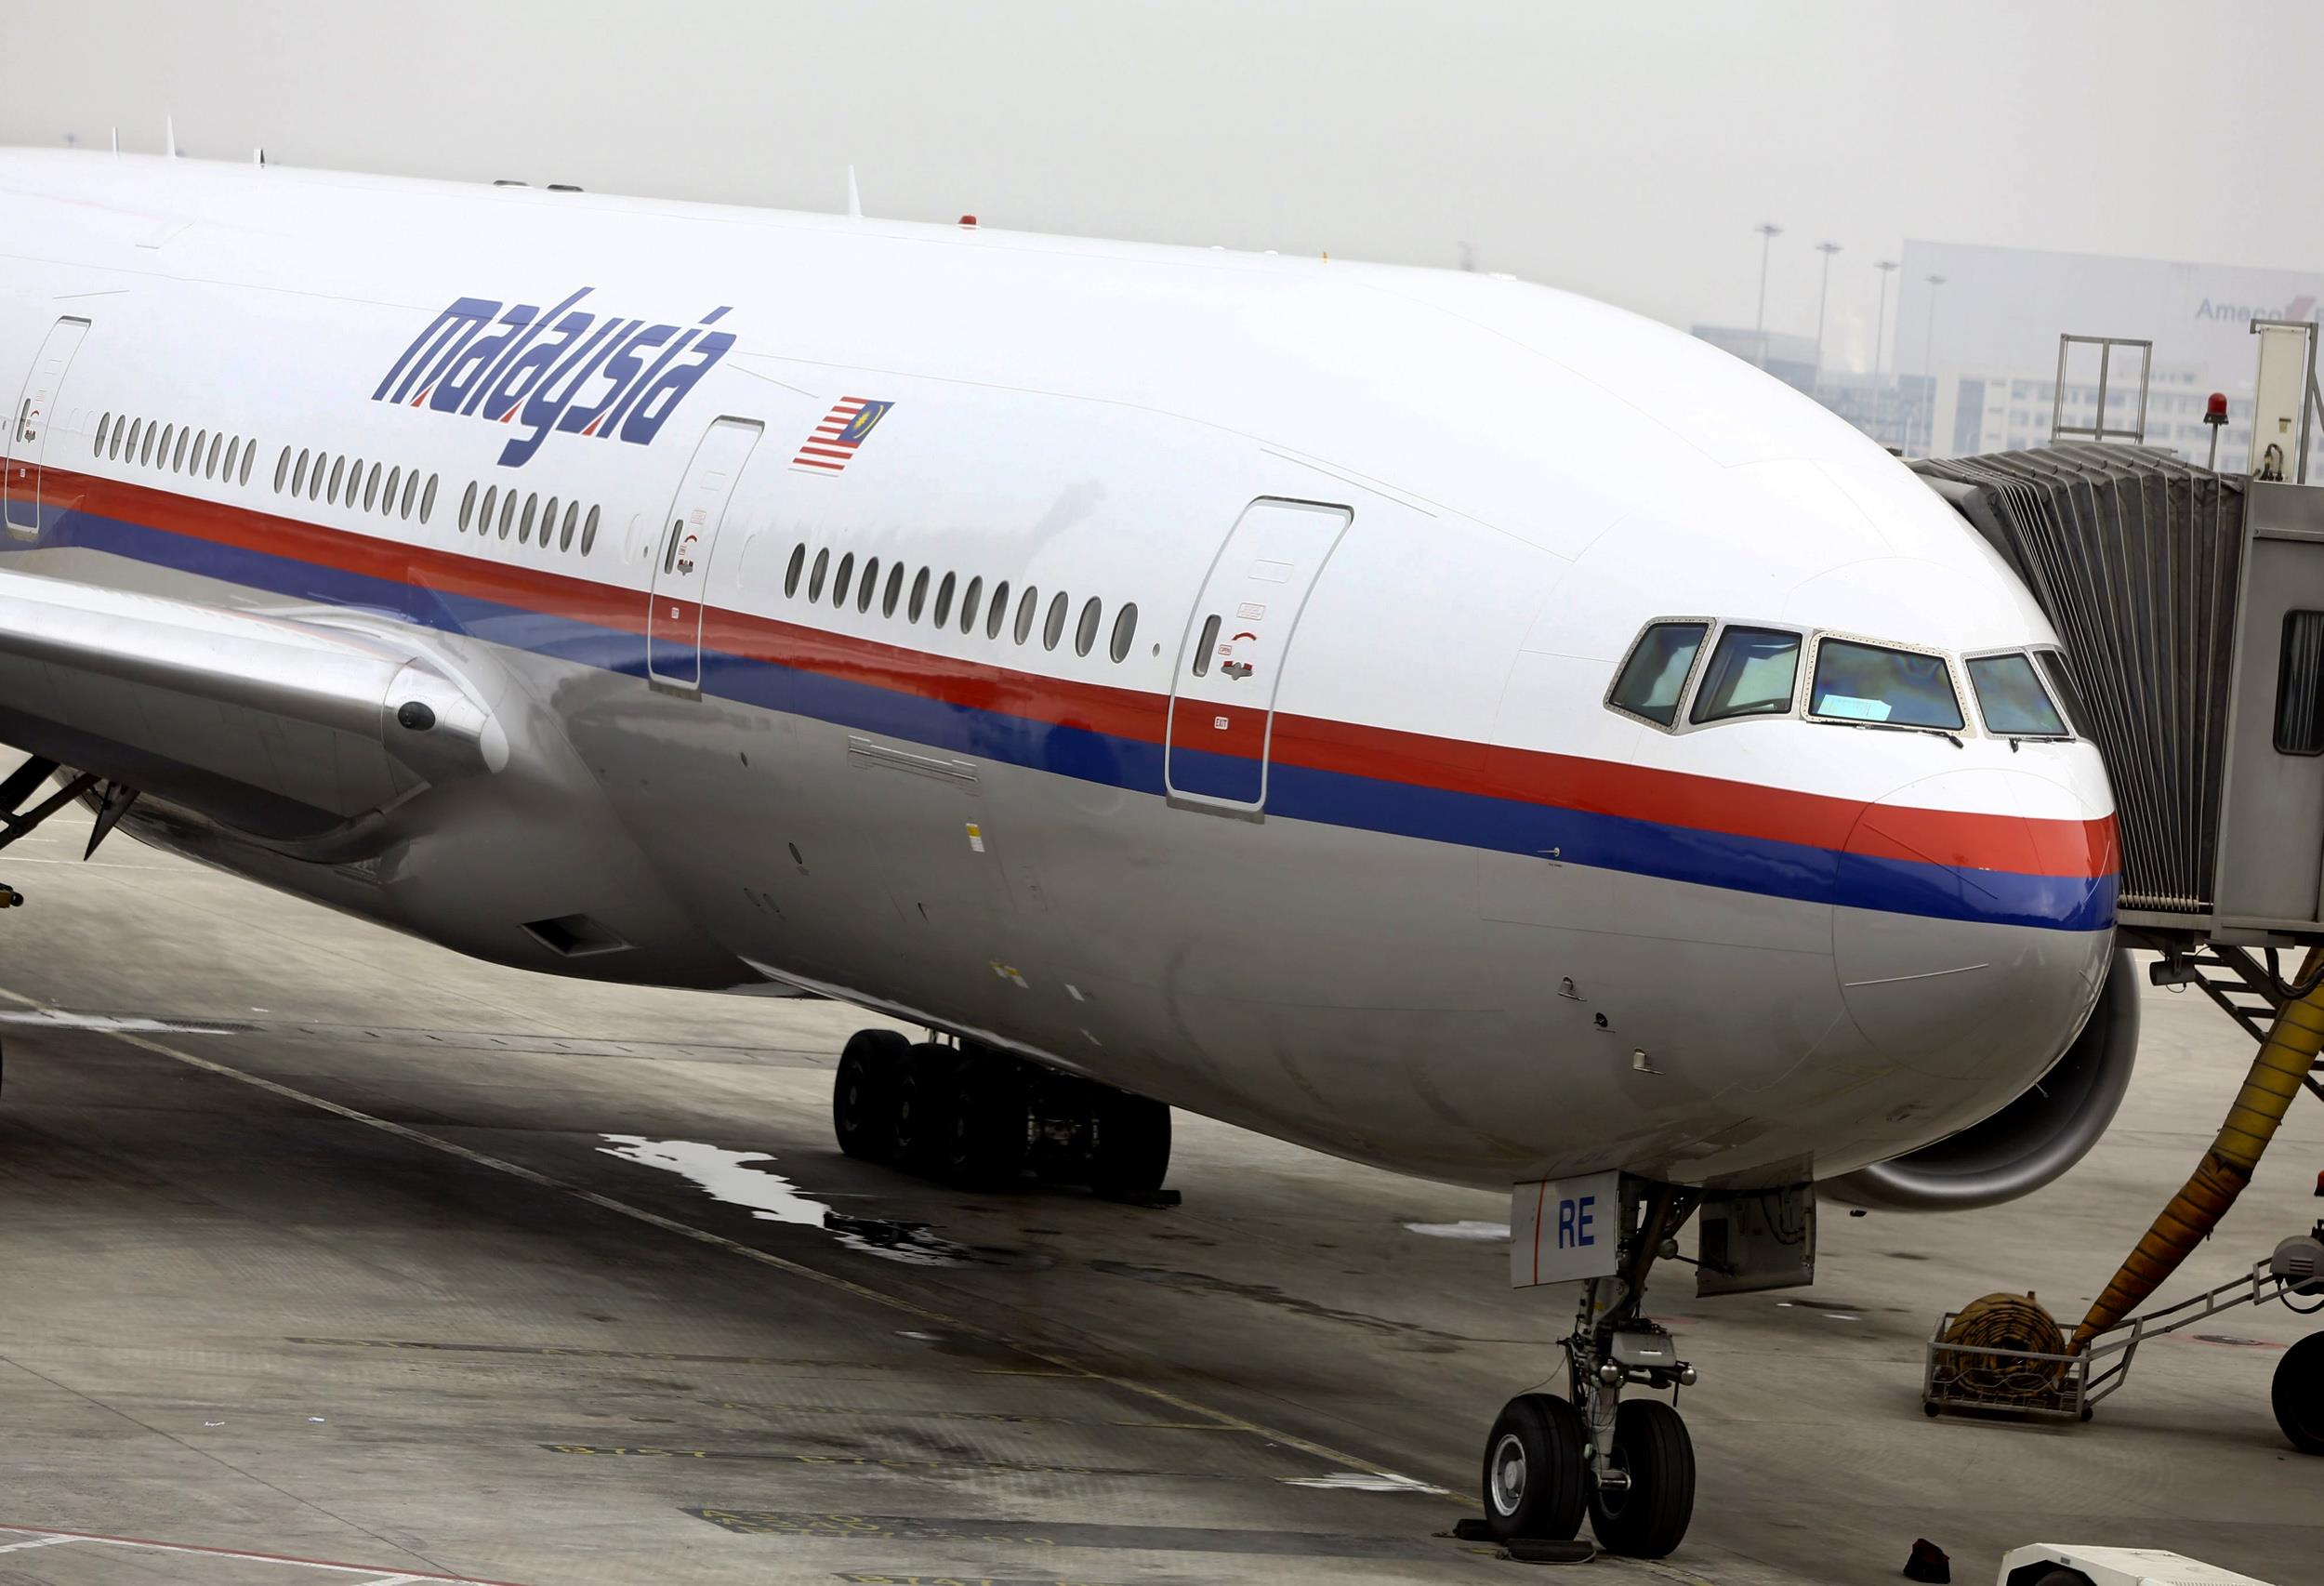 Chuyện gì sẽ xảy ra tiếp theo với Malaysia Airlines?